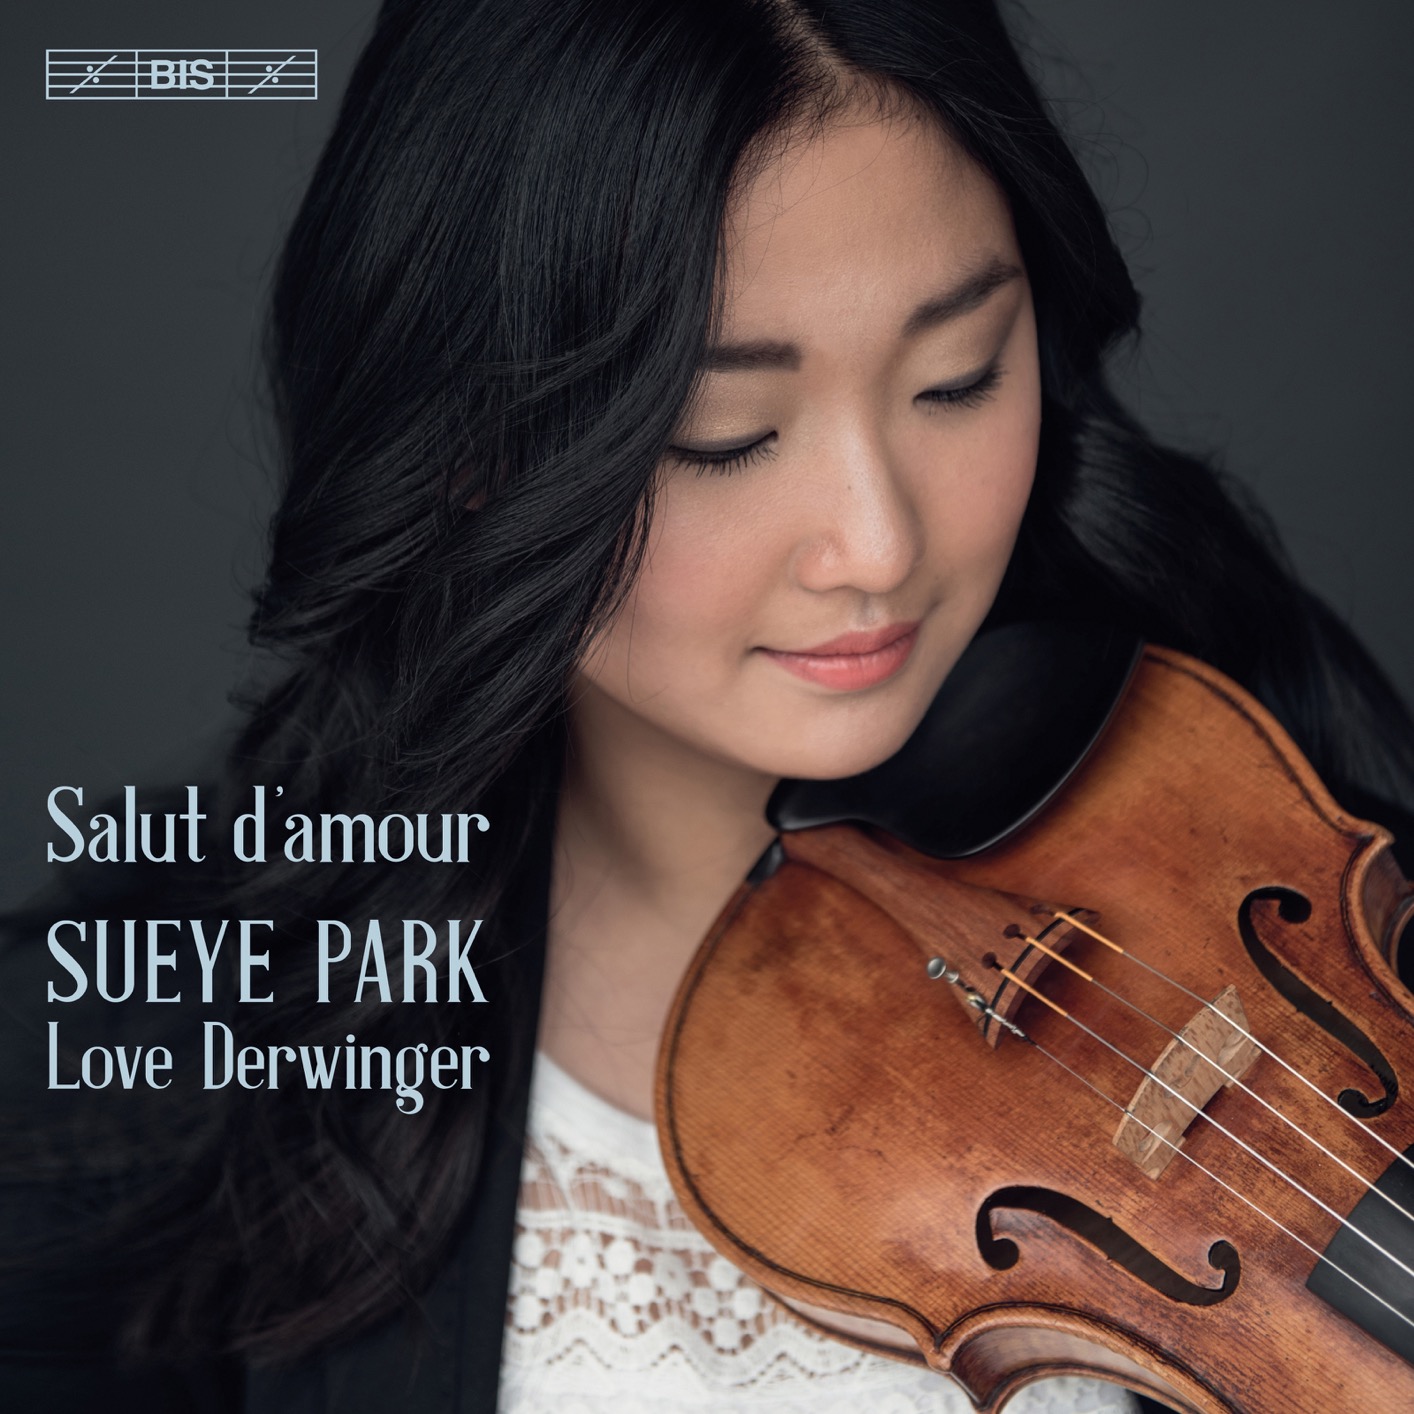 Sueye Park & Love Derwinger – Salut d’amour (2019) [FLAC 24bit/96kHz]